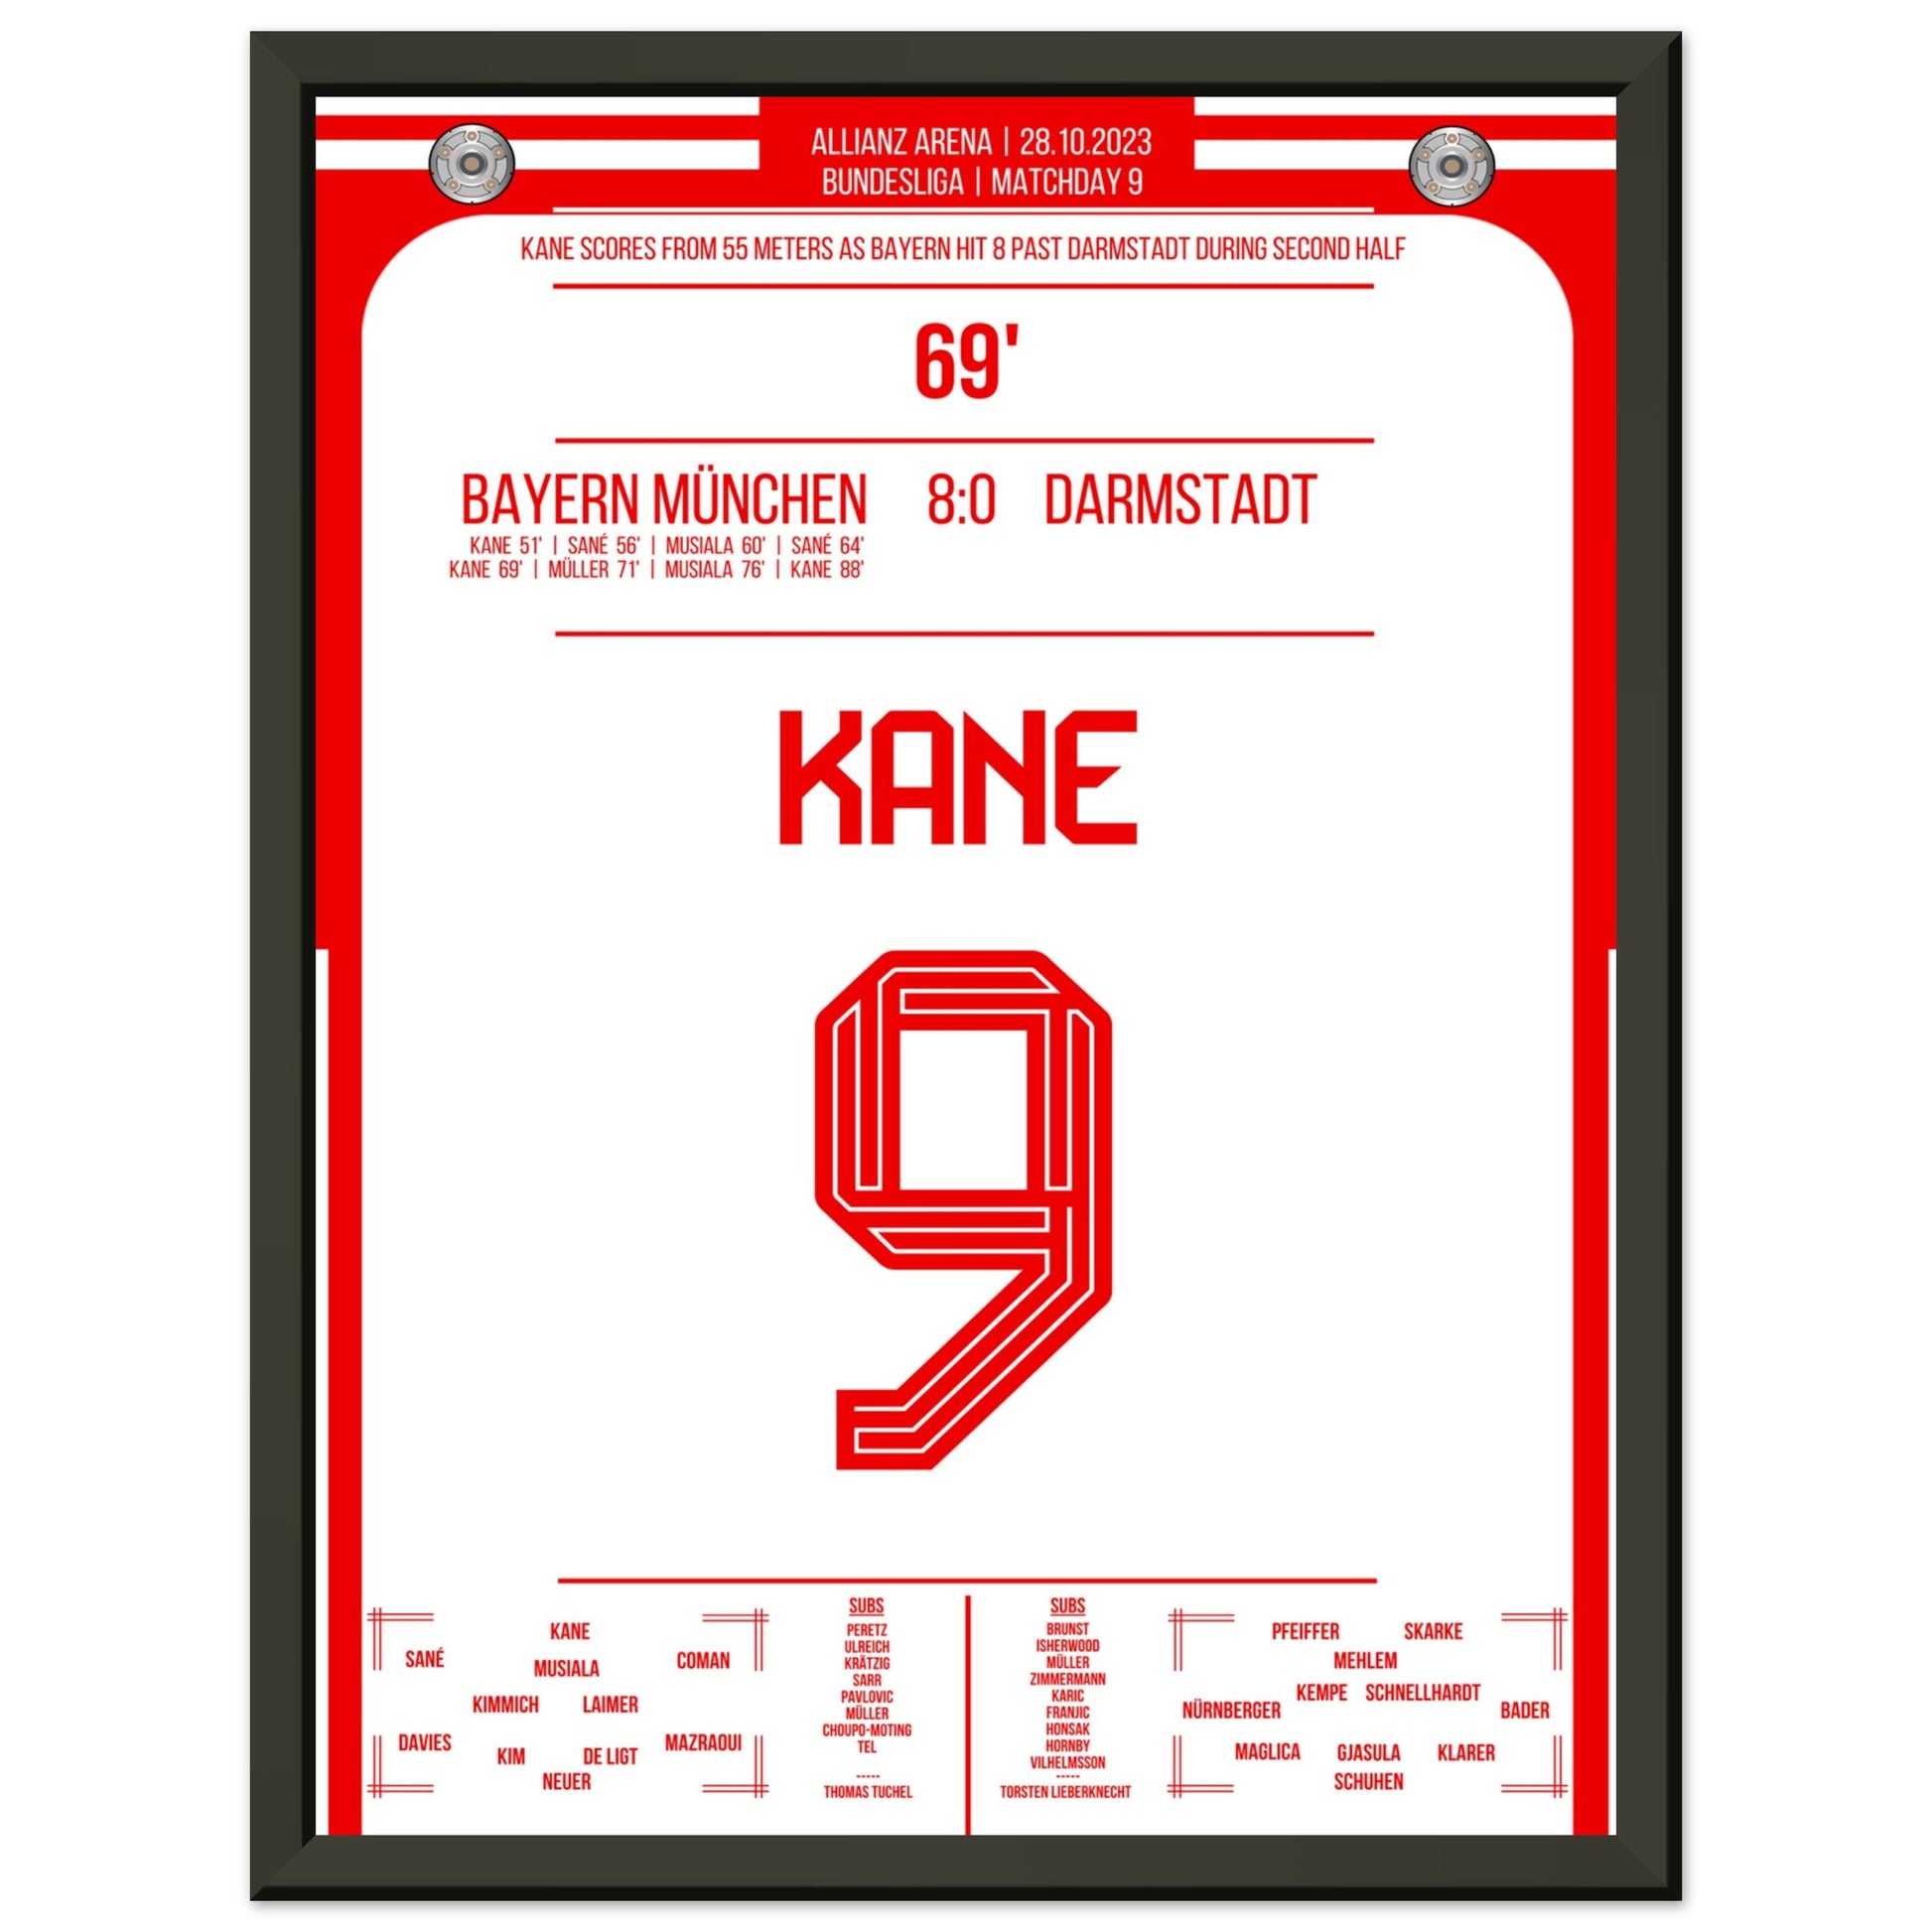 Kane's Traumtor aus 55 Metern bei 8-0 Sieg gegen Darmstadt 30x40-cm-12x16-Schwarzer-Aluminiumrahmen